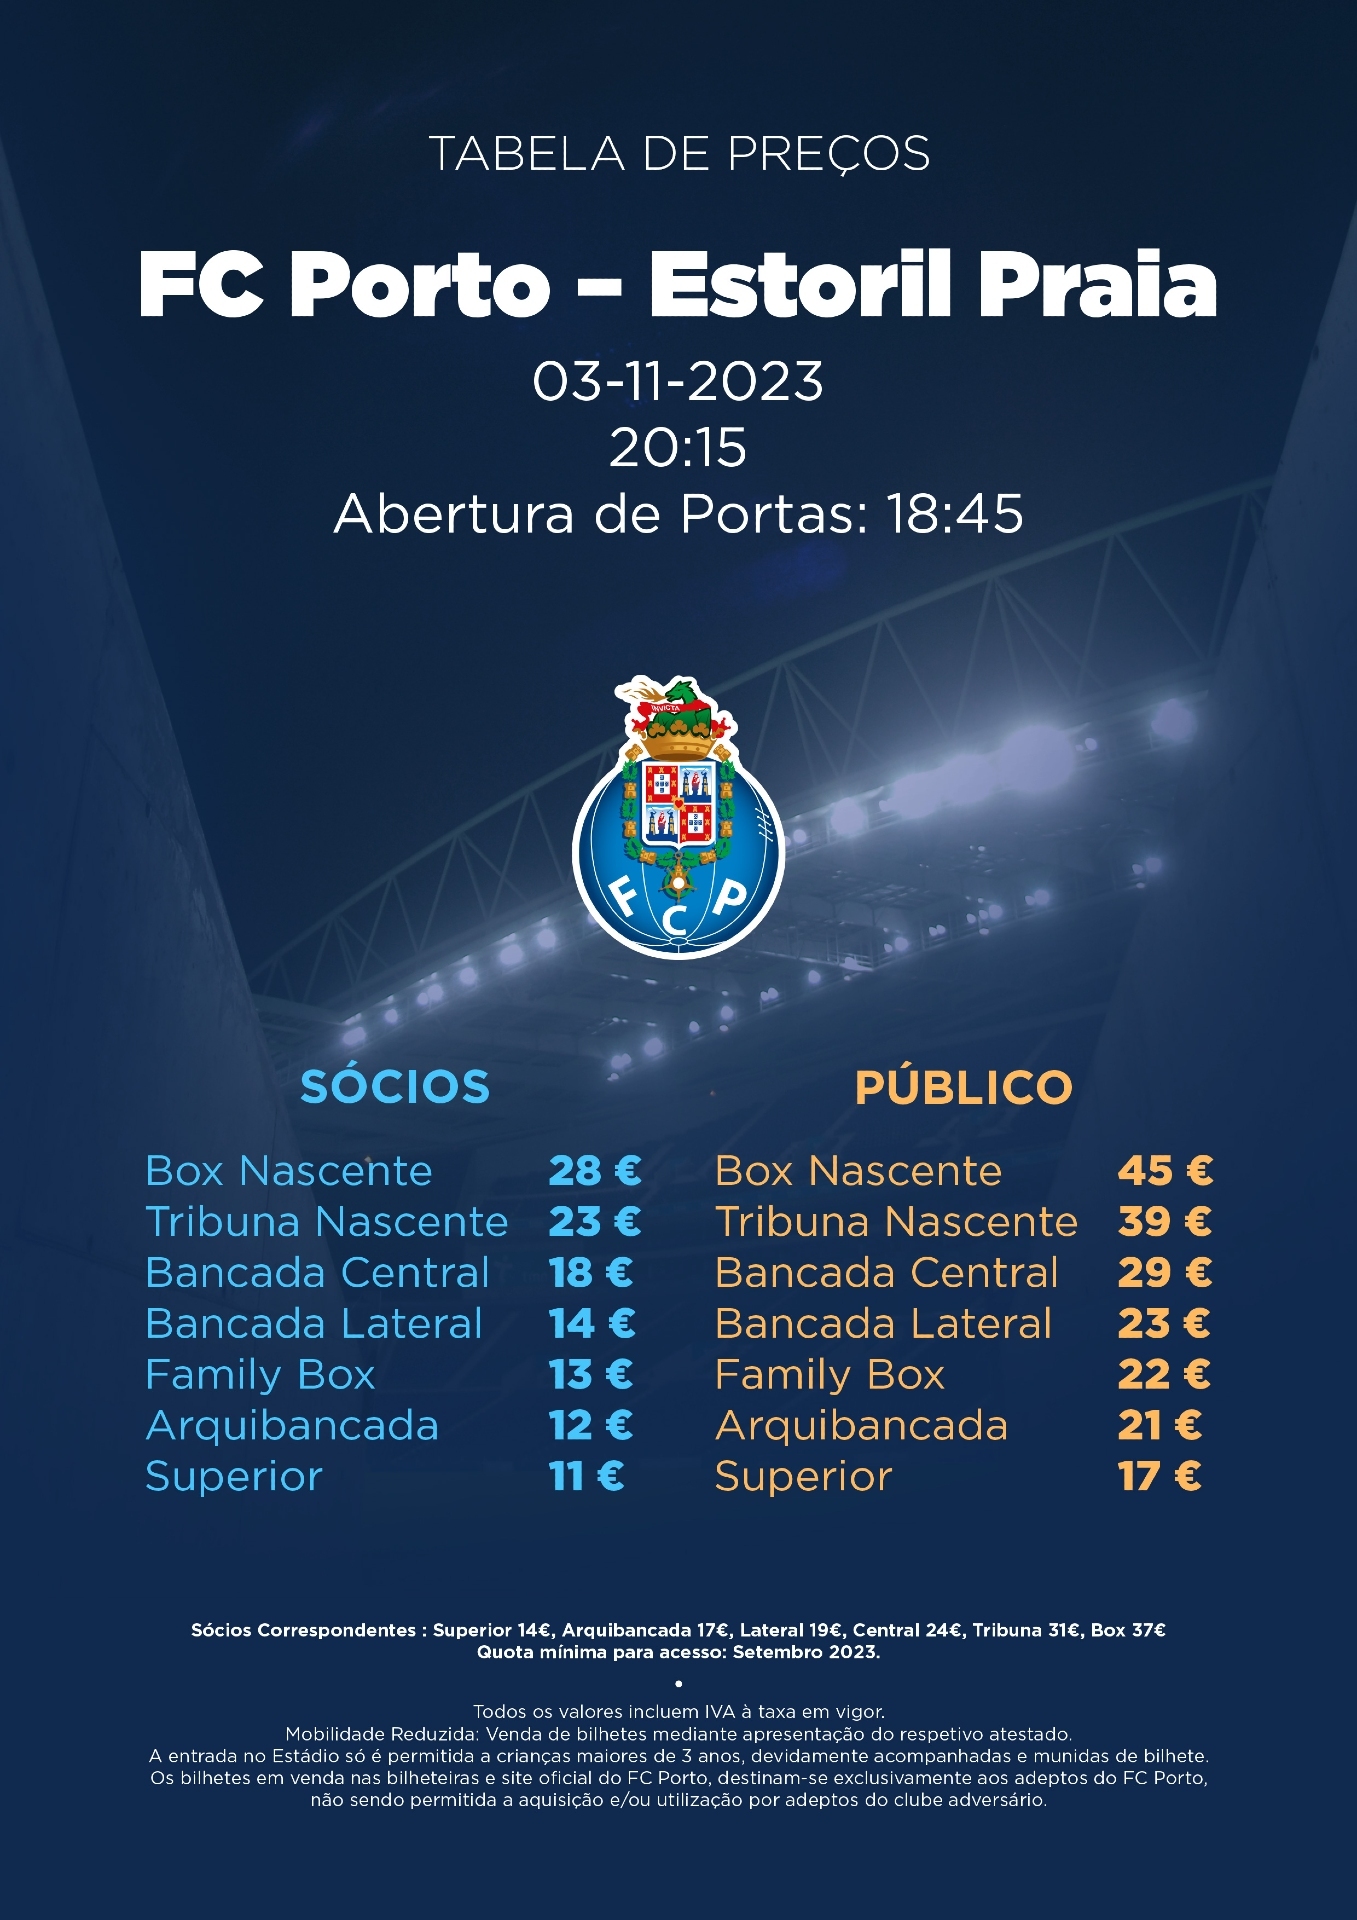 FC Porto - Notícias - Bilhetes à venda para o FC Porto-Estoril